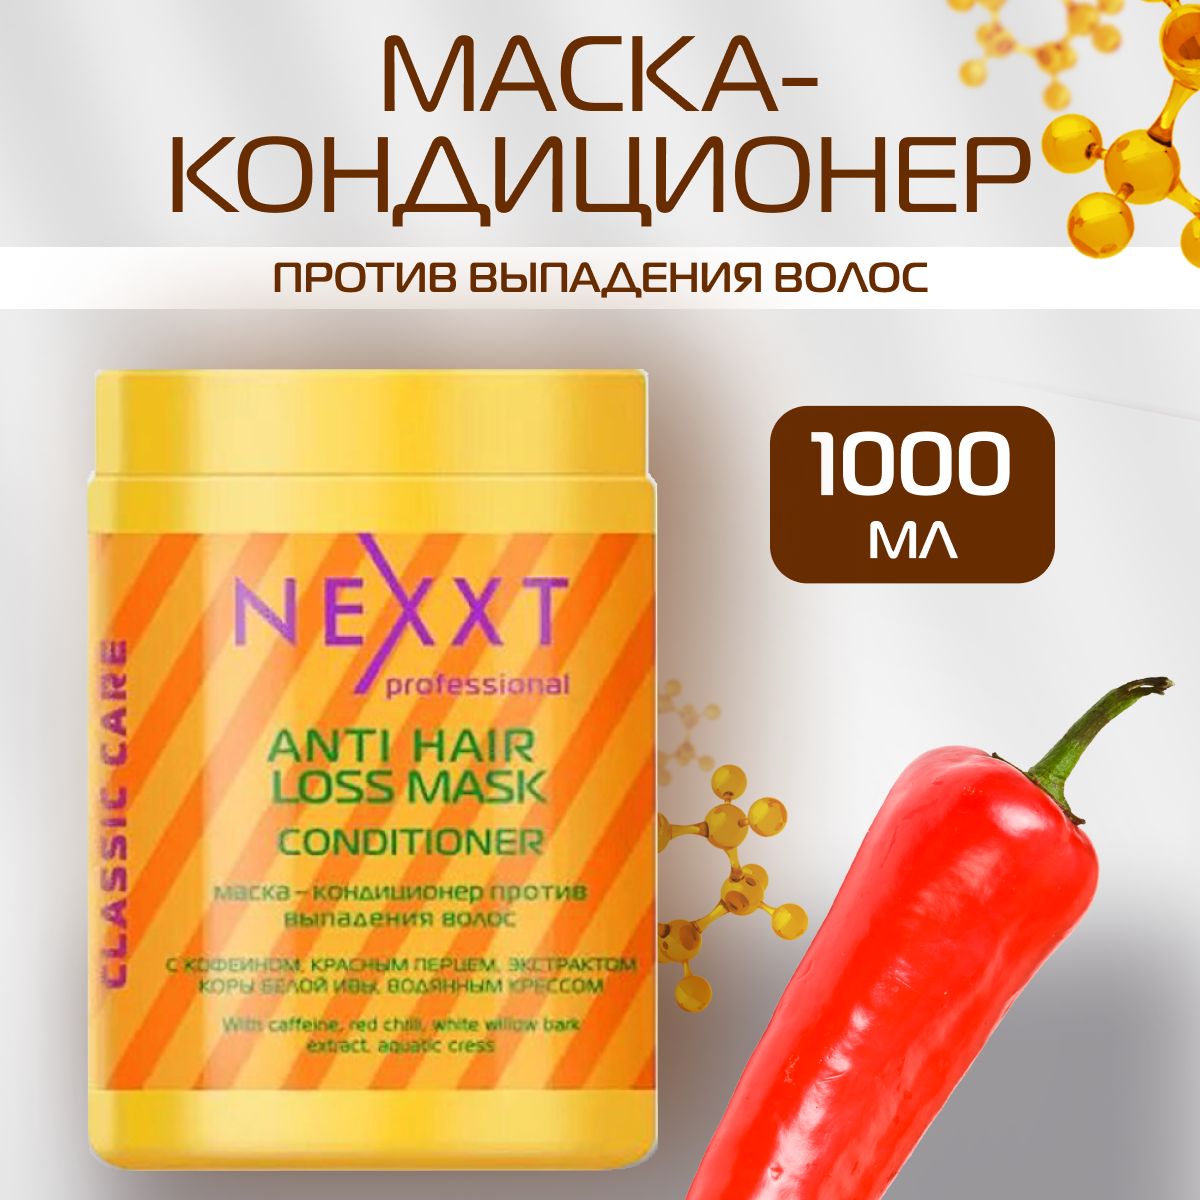 Nexxt Professional Маска-кондиционер против выпадения волос, 1000 мл